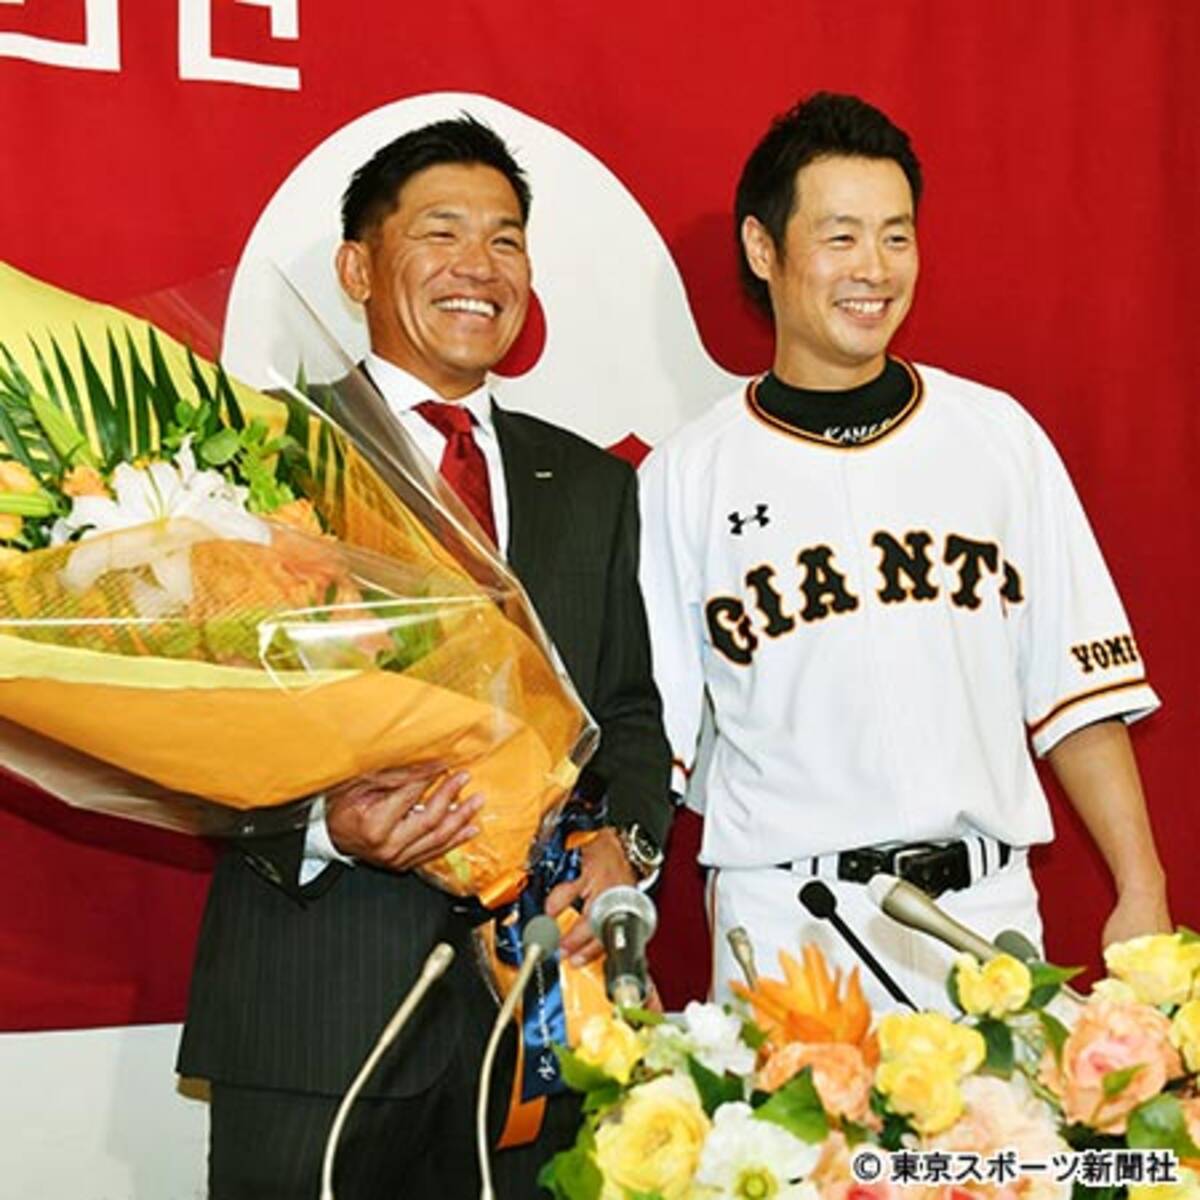 巨人 脇谷が引退会見 涙はなく笑顔で いい野球人生だった 18年9月19日 エキサイトニュース